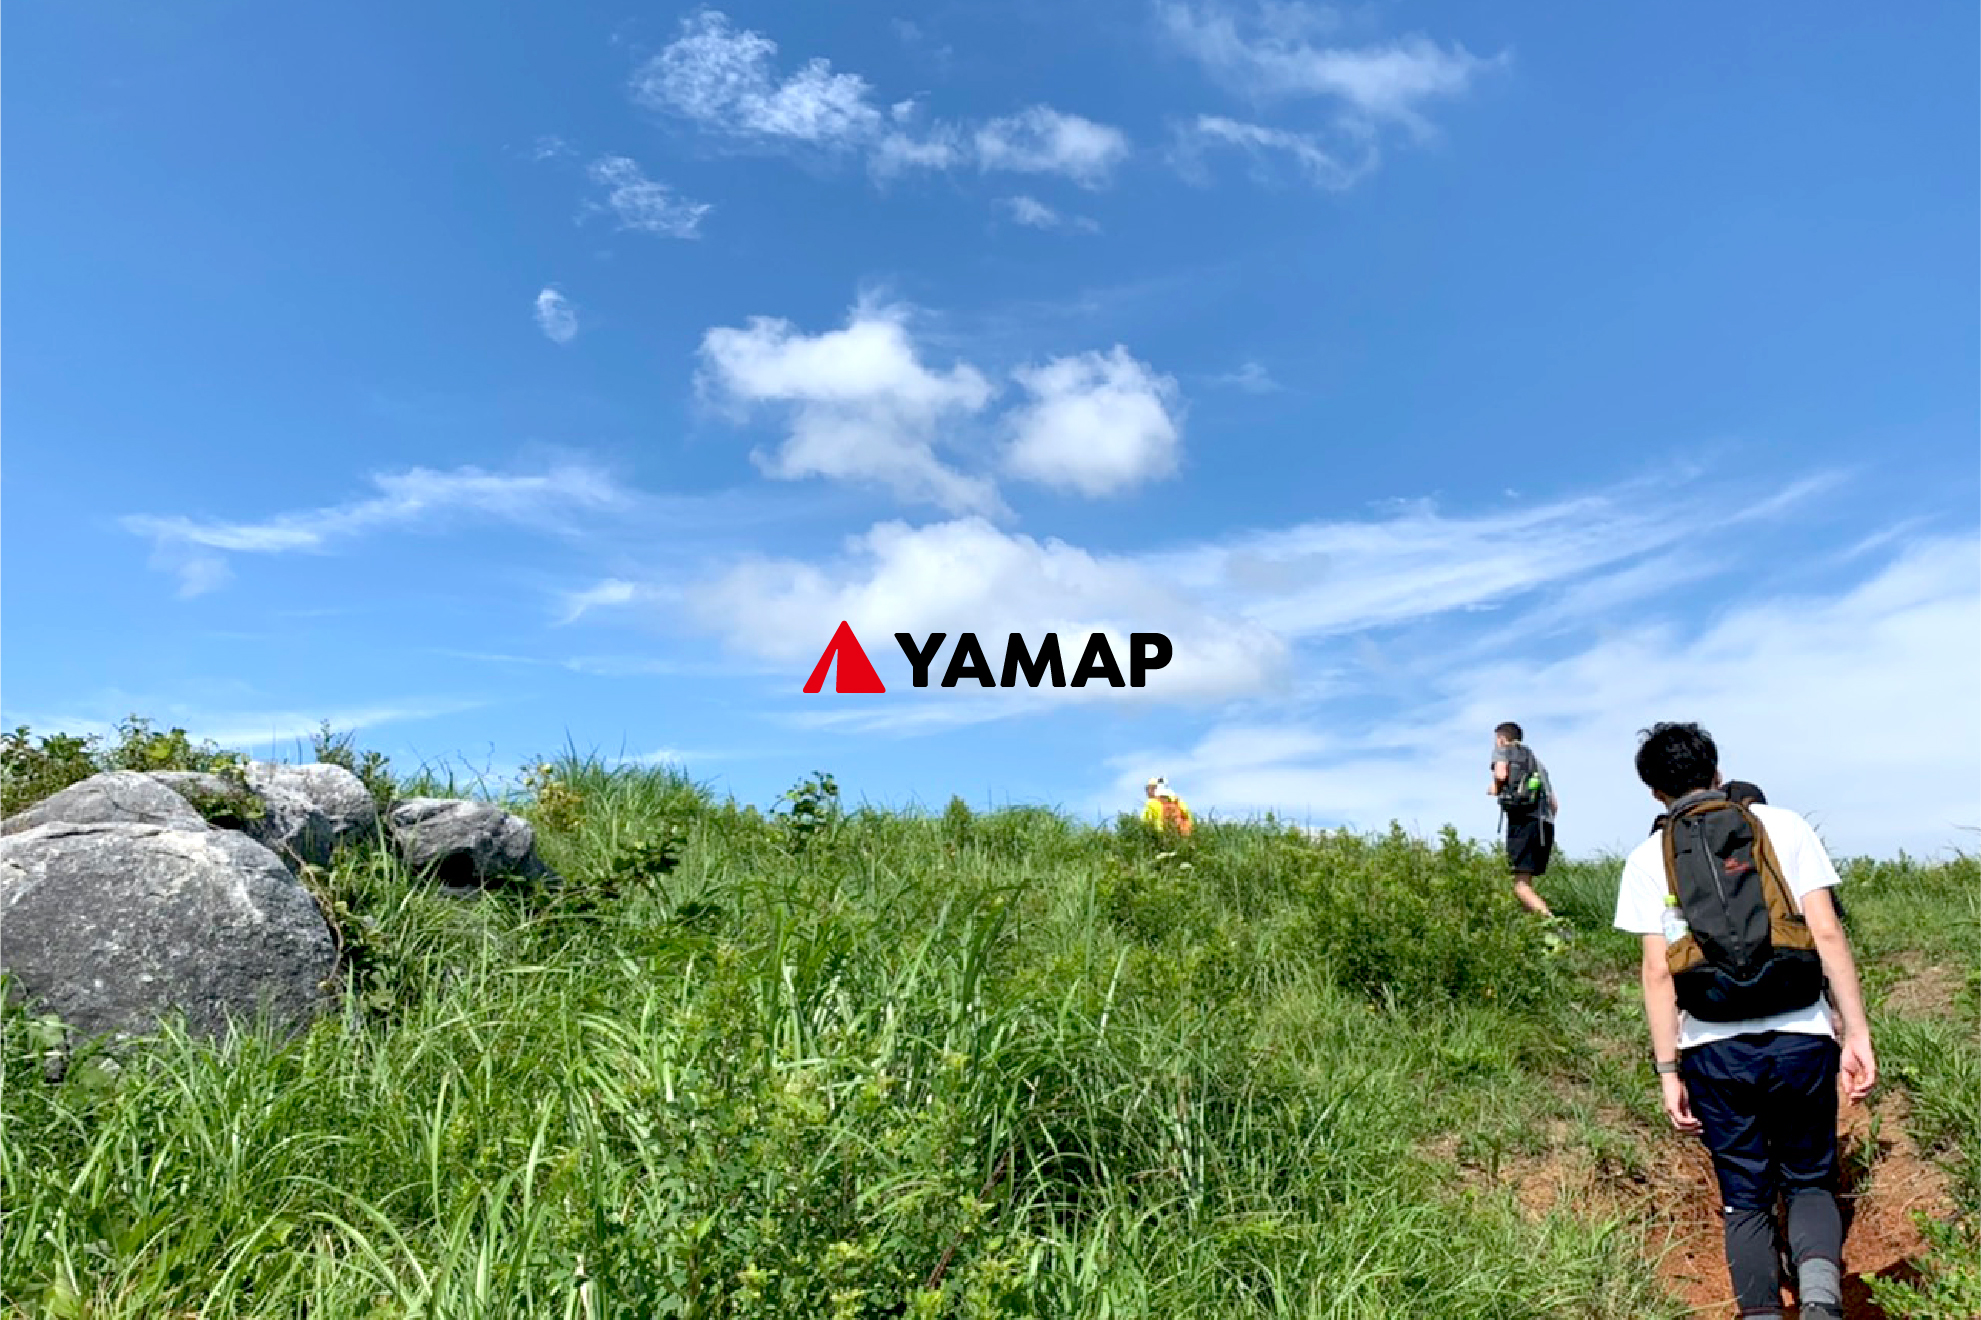 社員で月に1回、登山を行っている。その際に実際にYAMAPを利用して、ユーザー目線になることでサービス改善を行っているという。